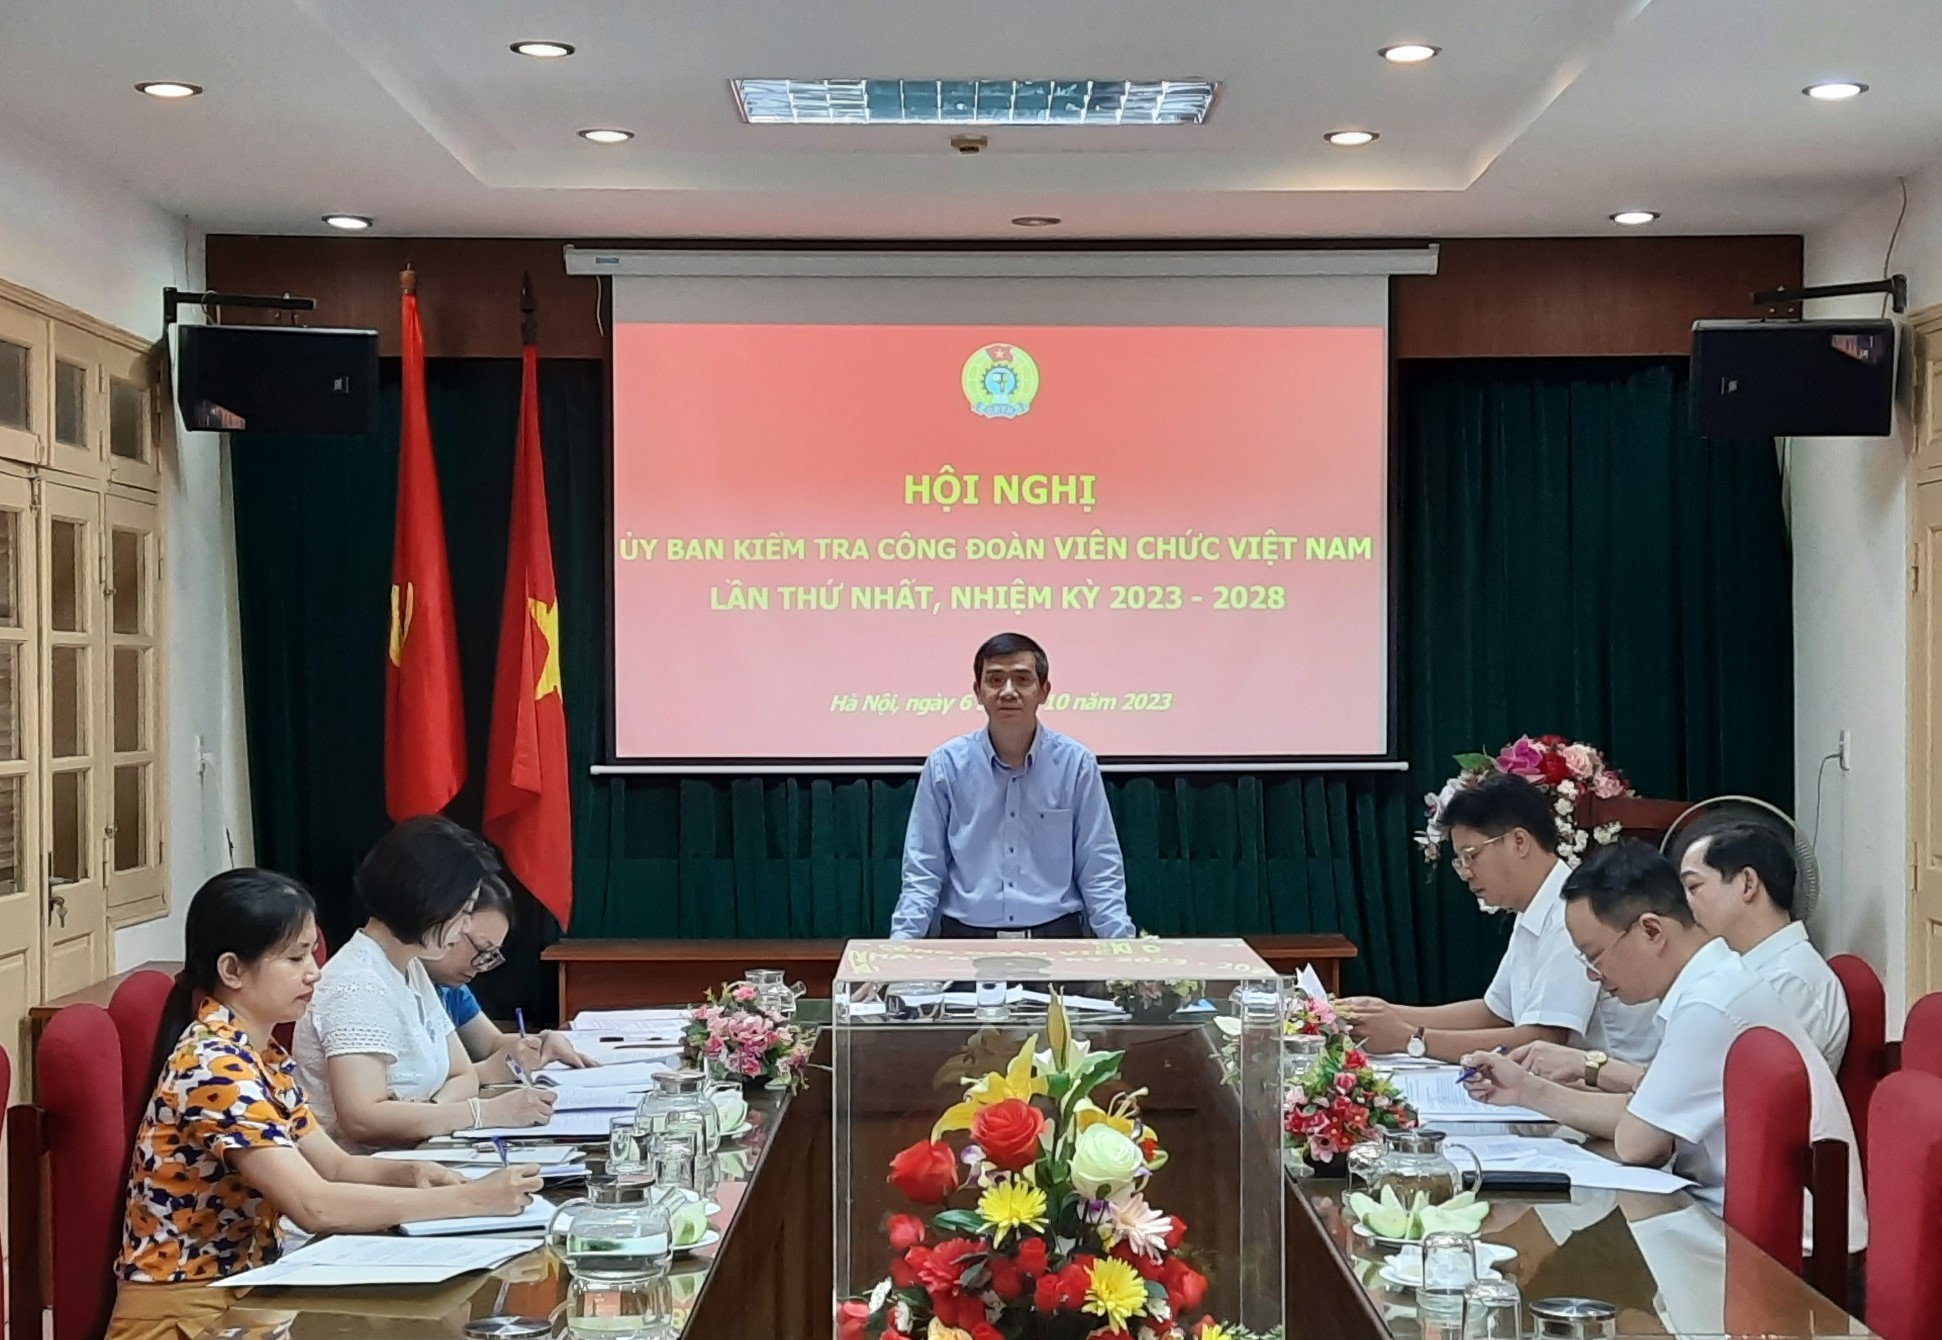 Hội nghị Ủy ban Kiểm tra Công đoàn Viên chức Việt Nam lần thứ Nhất, nhiệm kỳ 2023 - 2028